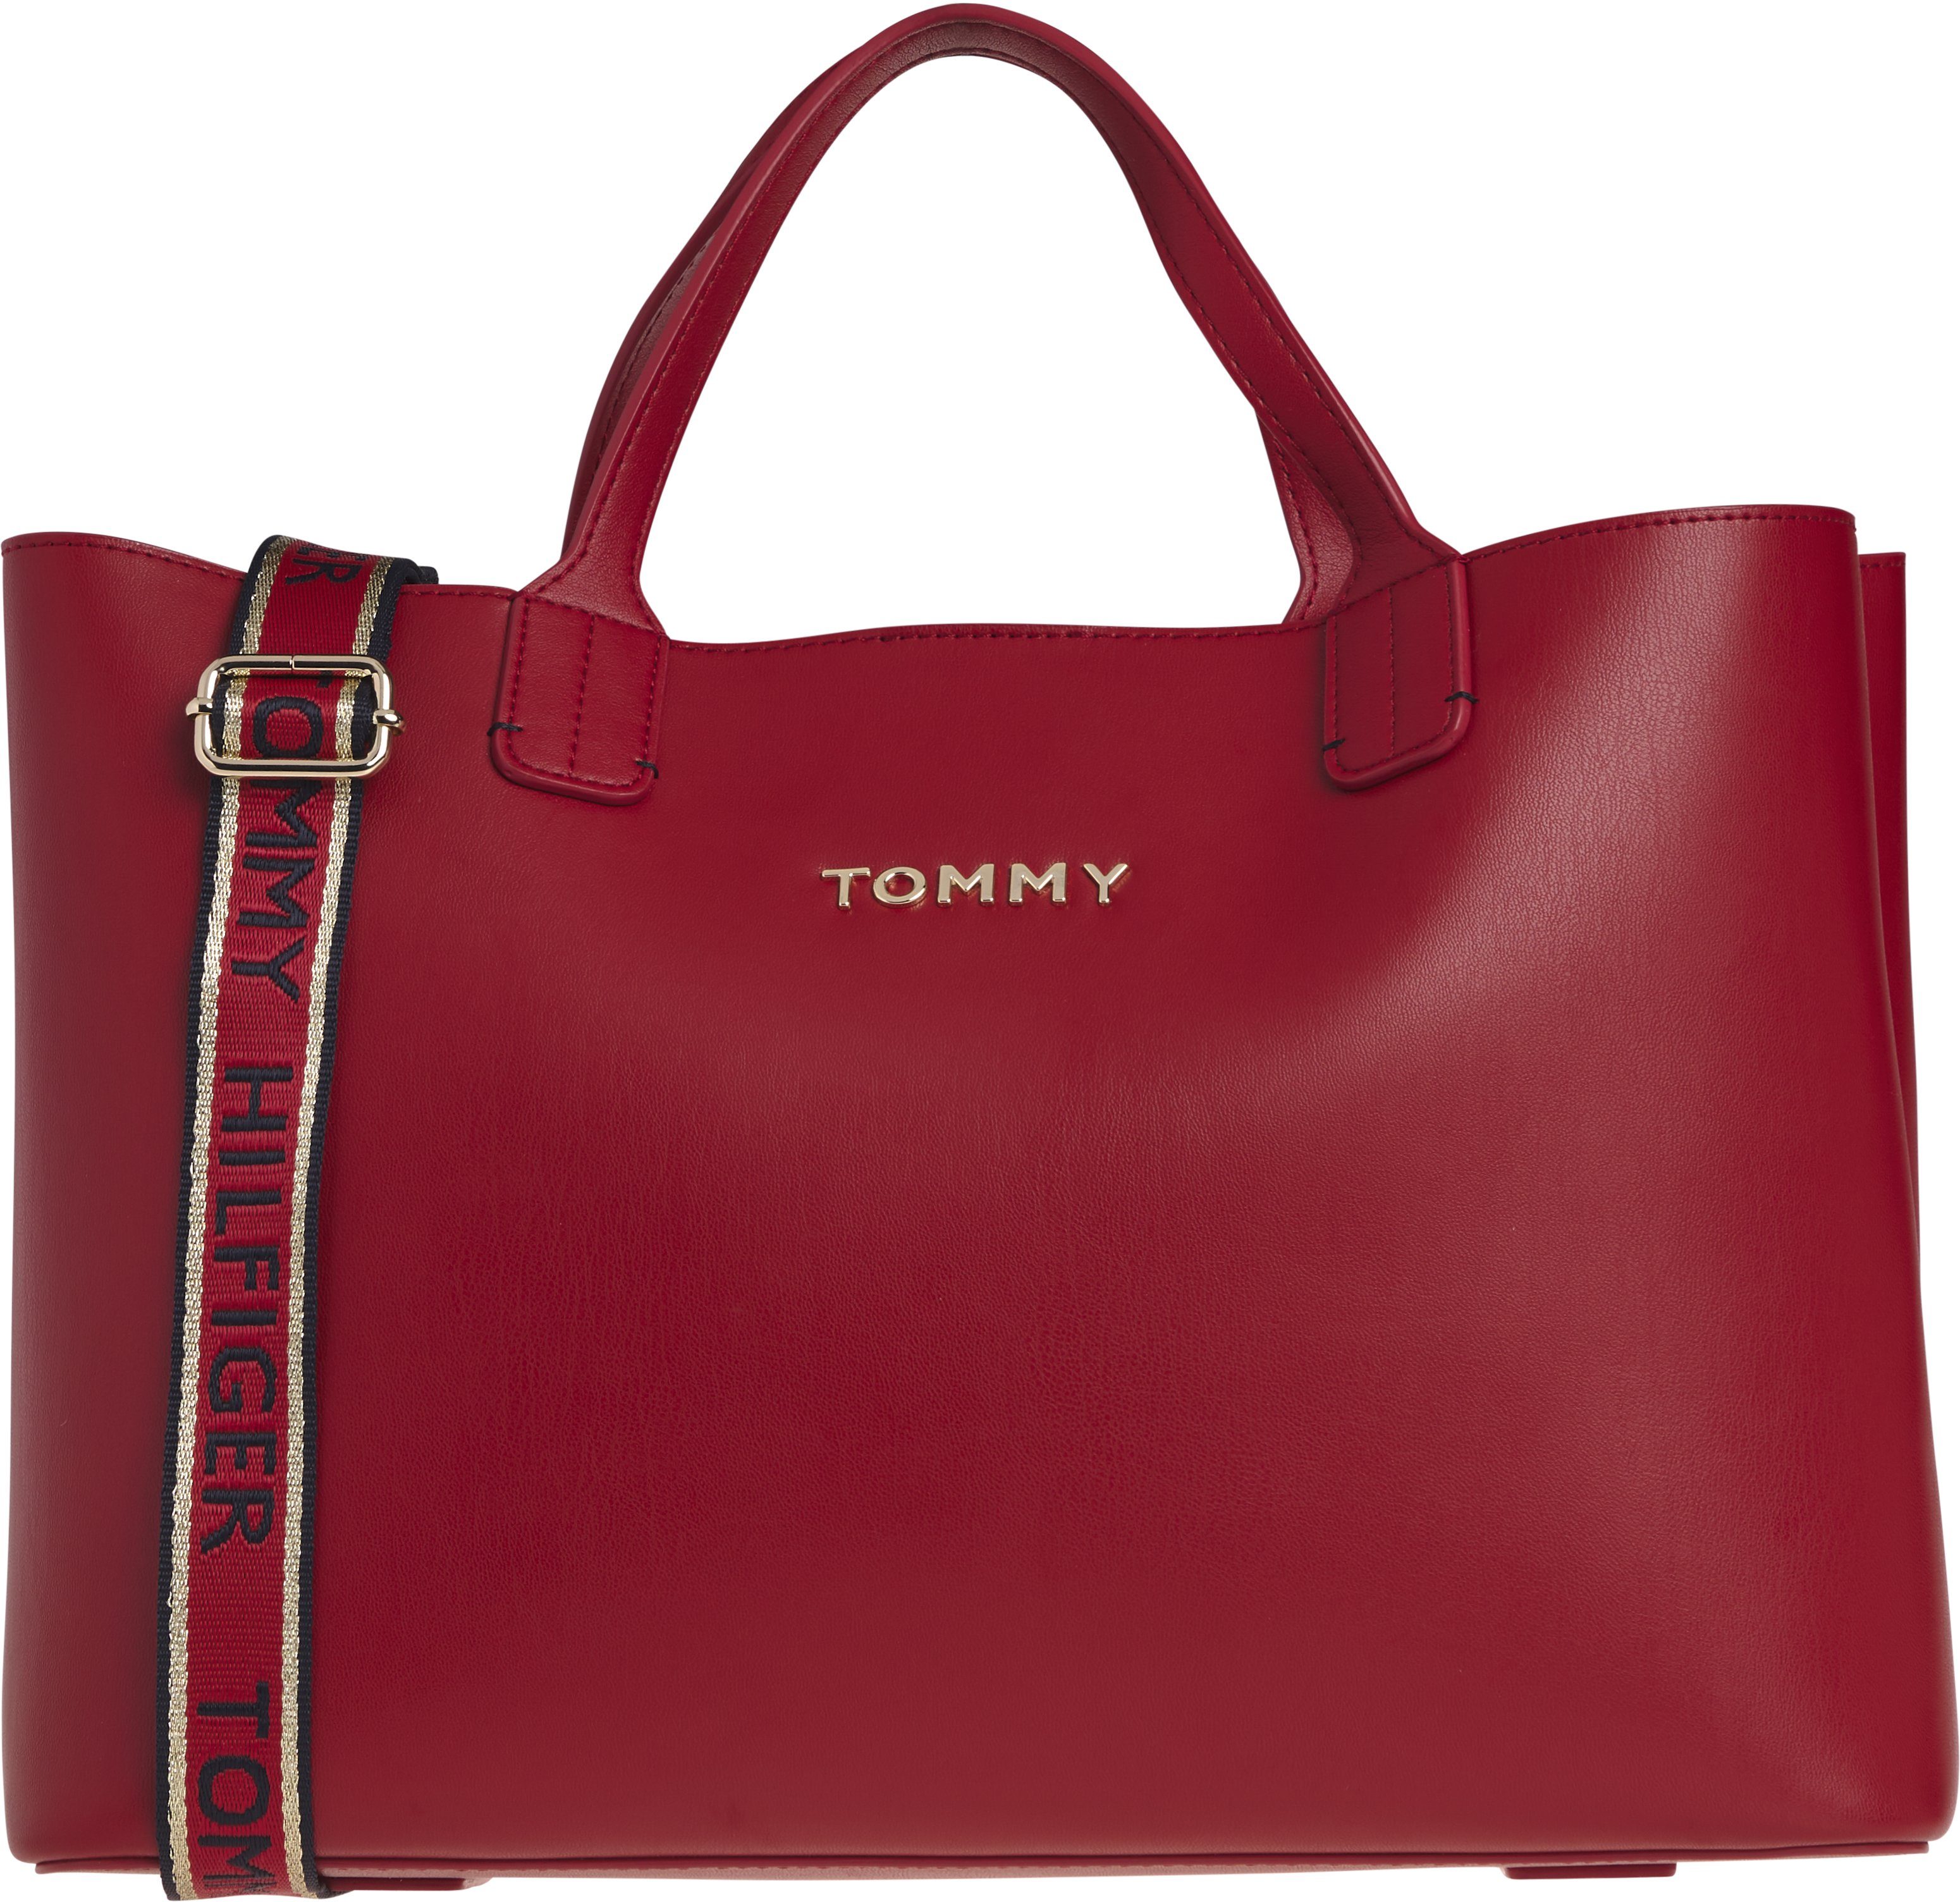 Tommy Hilfiger Taschen online kaufen | OTTO